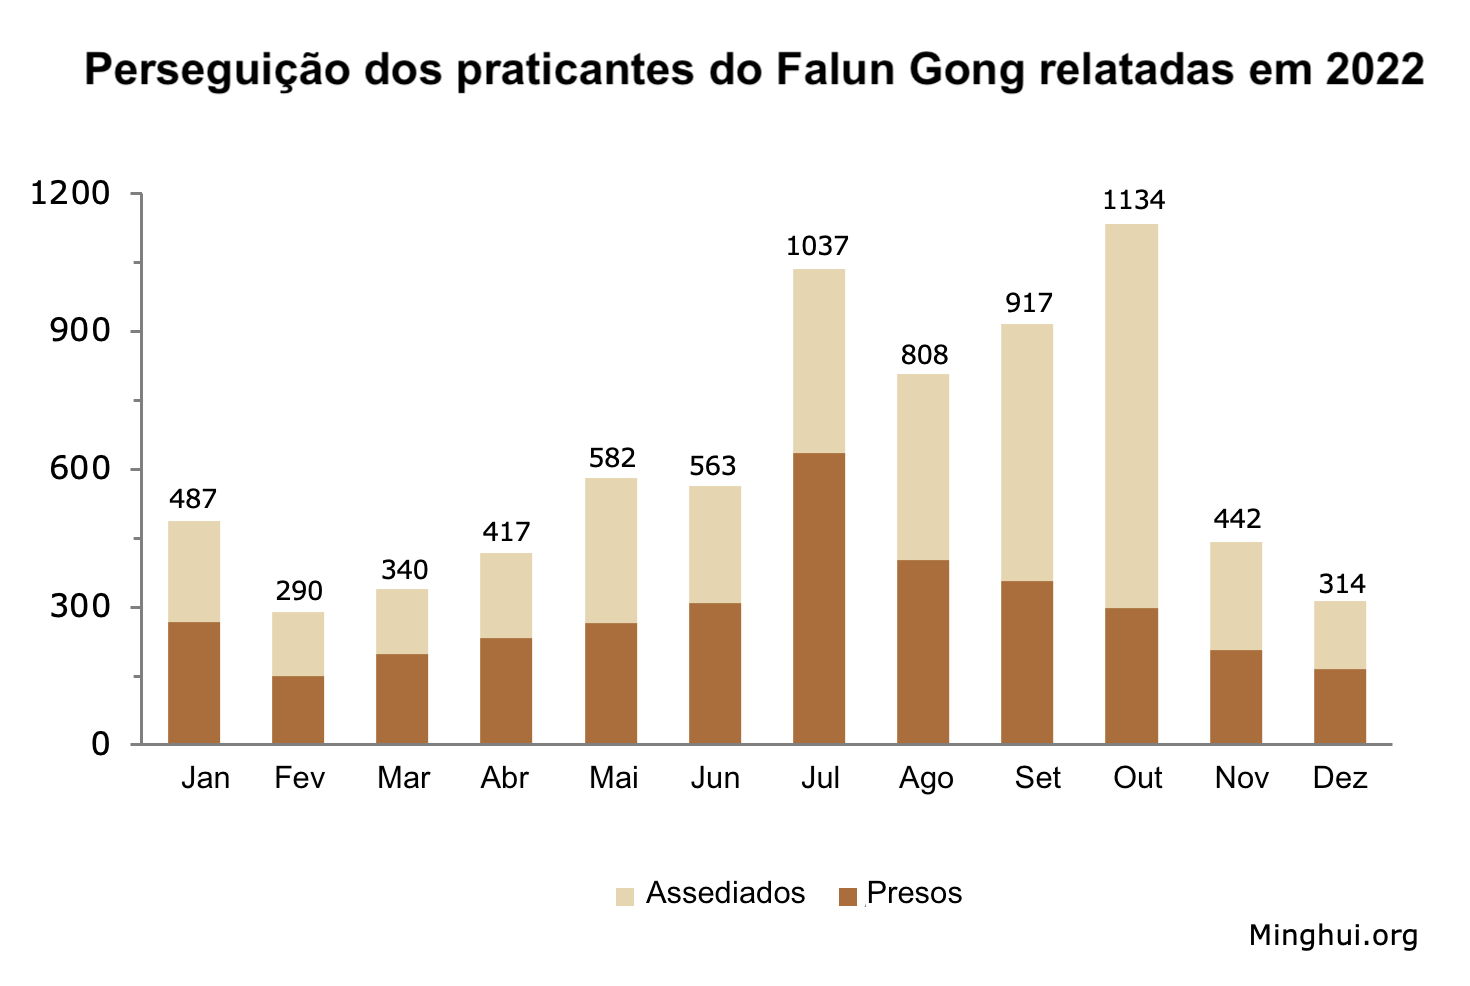 Image for article Reportados em 2022: 7.331 praticantes do Falun Gong foram presos ou assediados por causa de sua fé